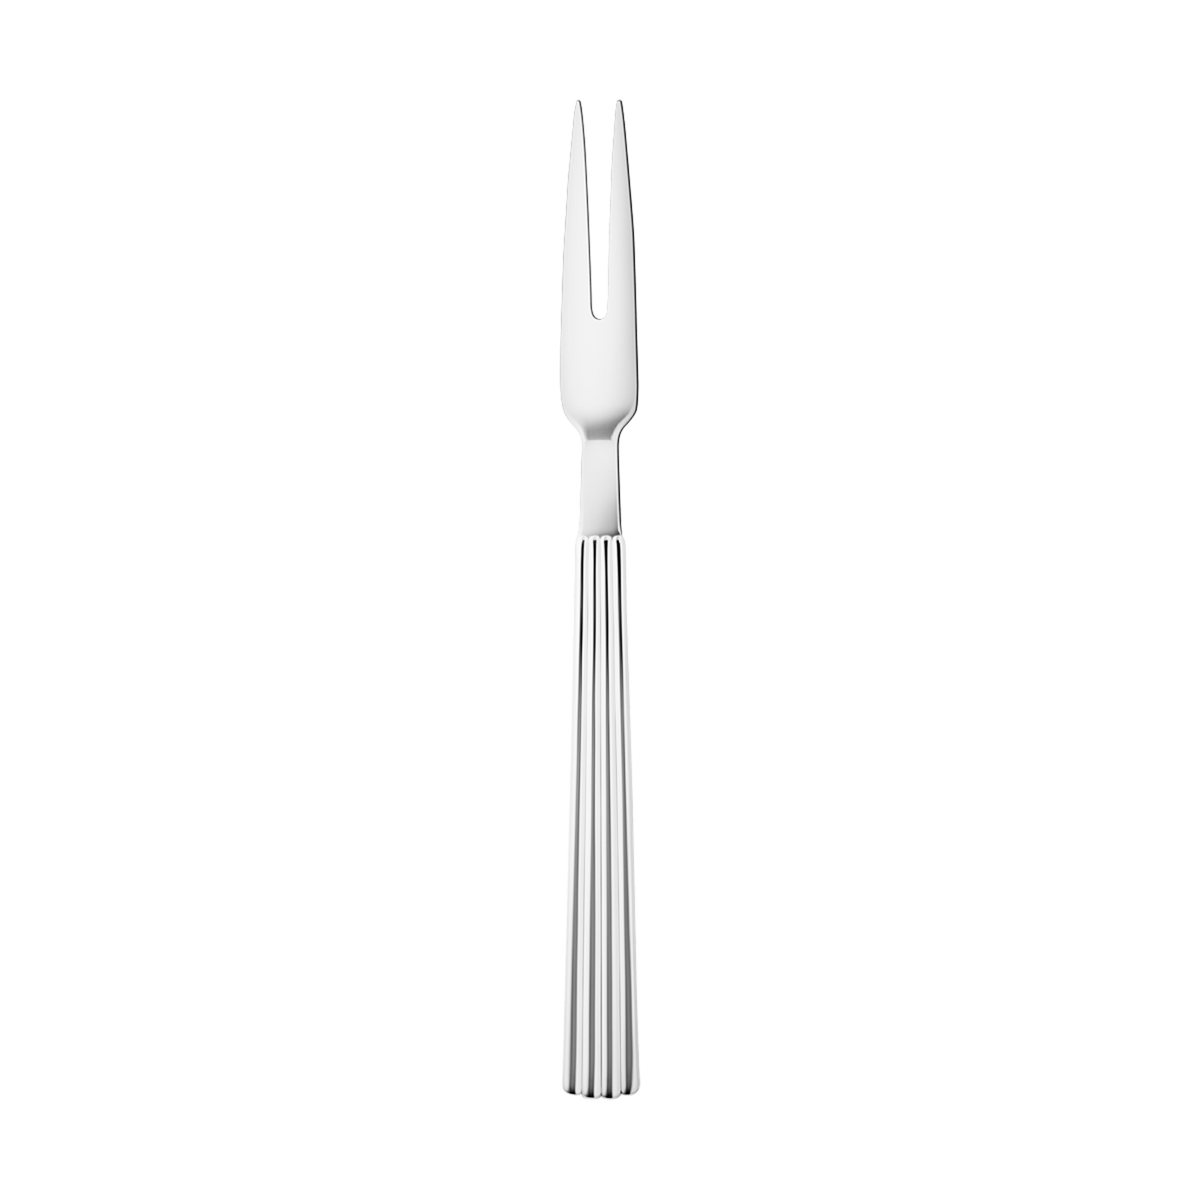 Bernadotte Meat Fork by Georg Jensen